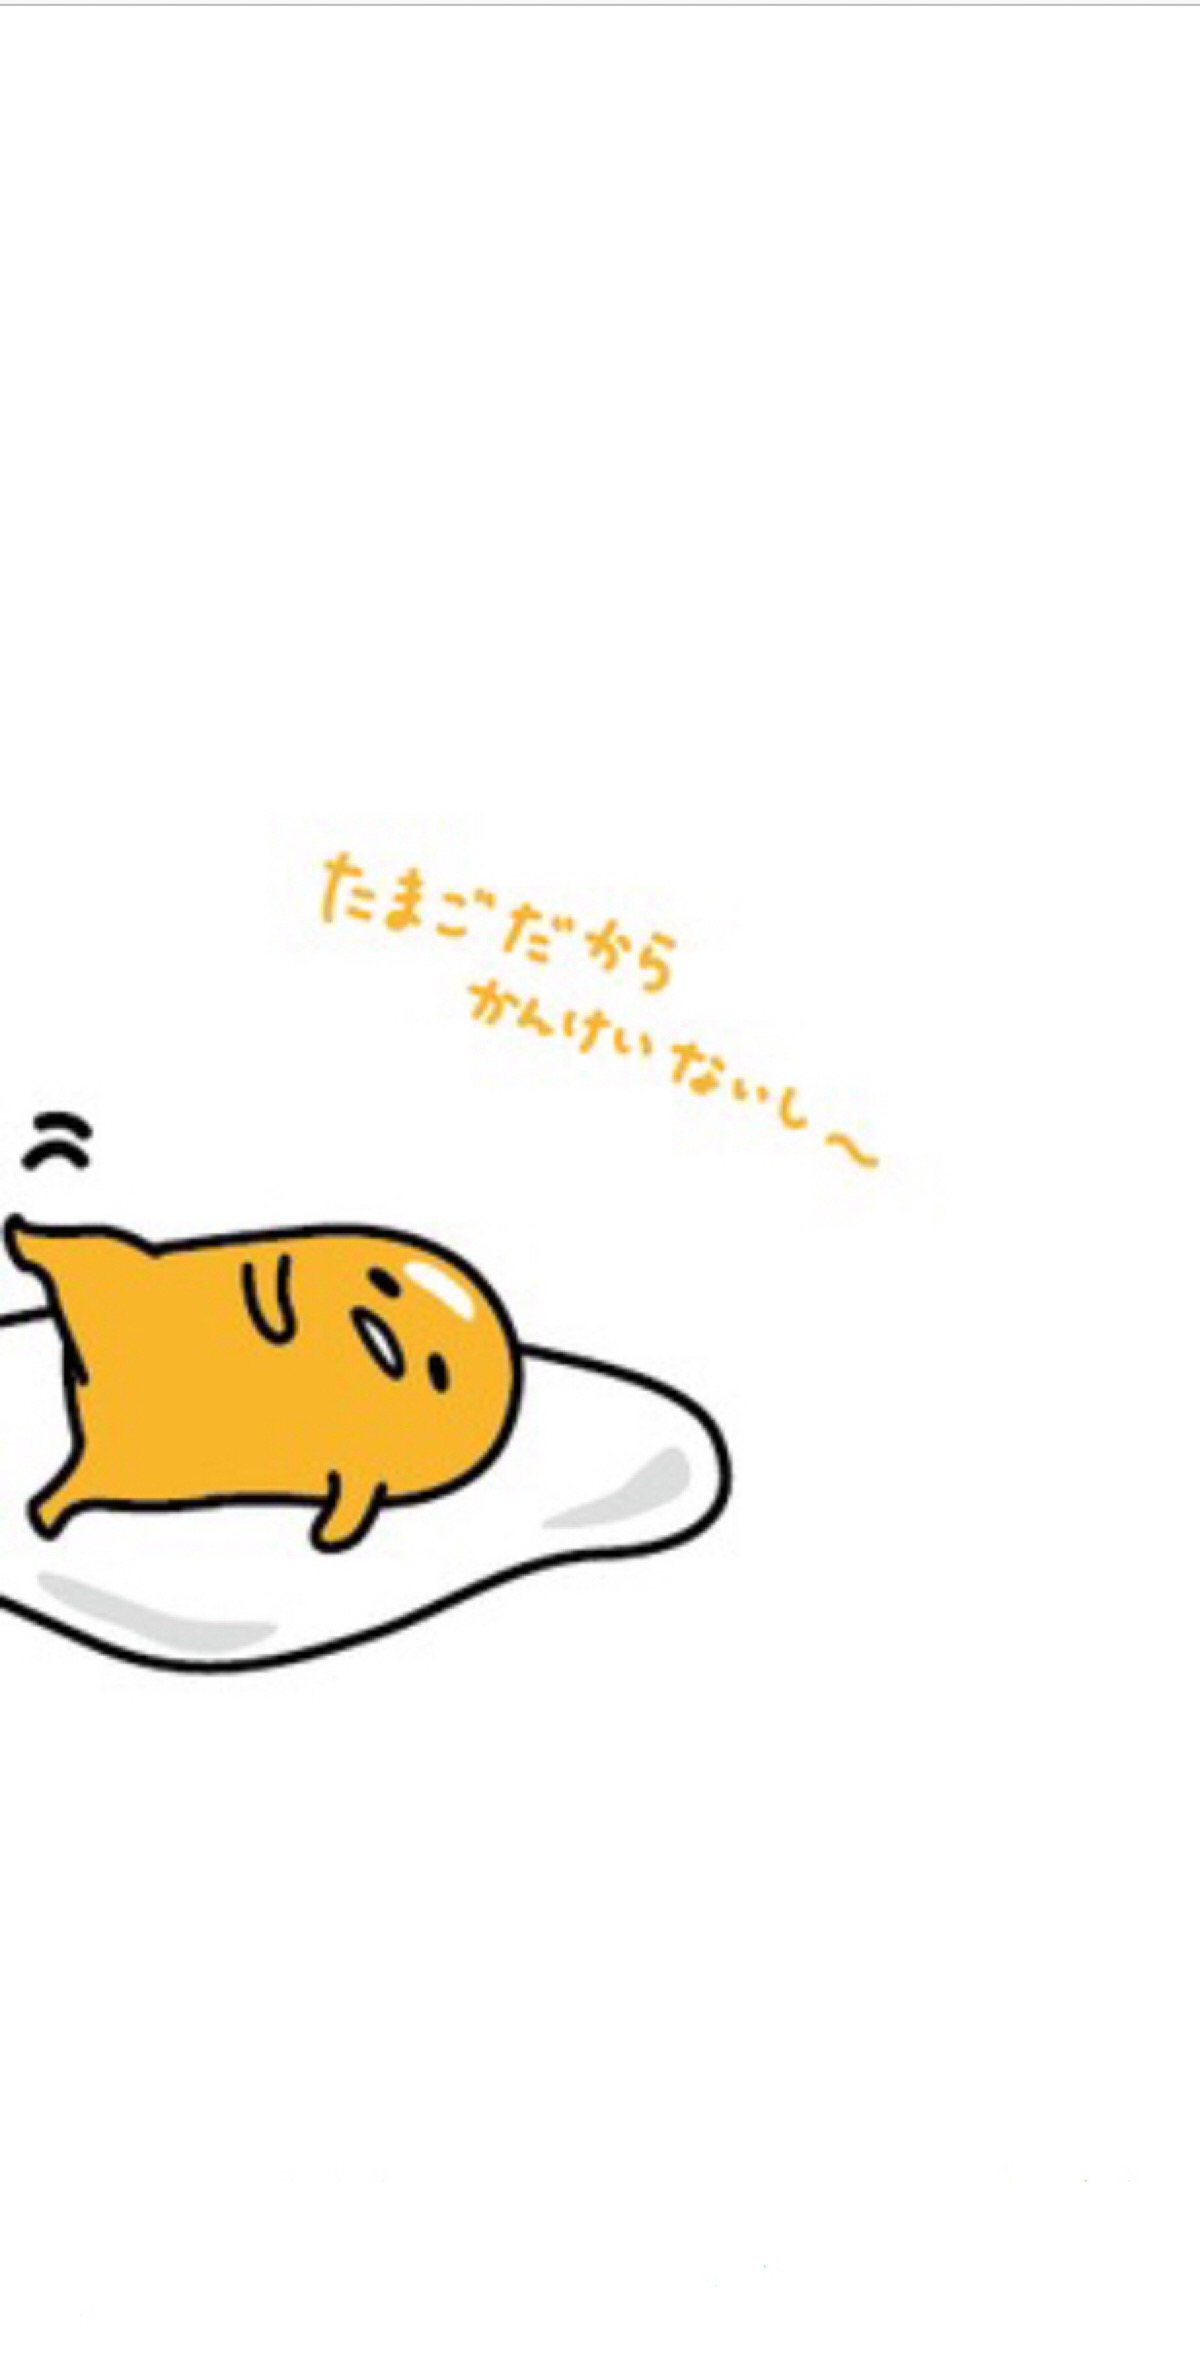 懒蛋蛋的睡姿·壁纸·卡通·三丽鸥